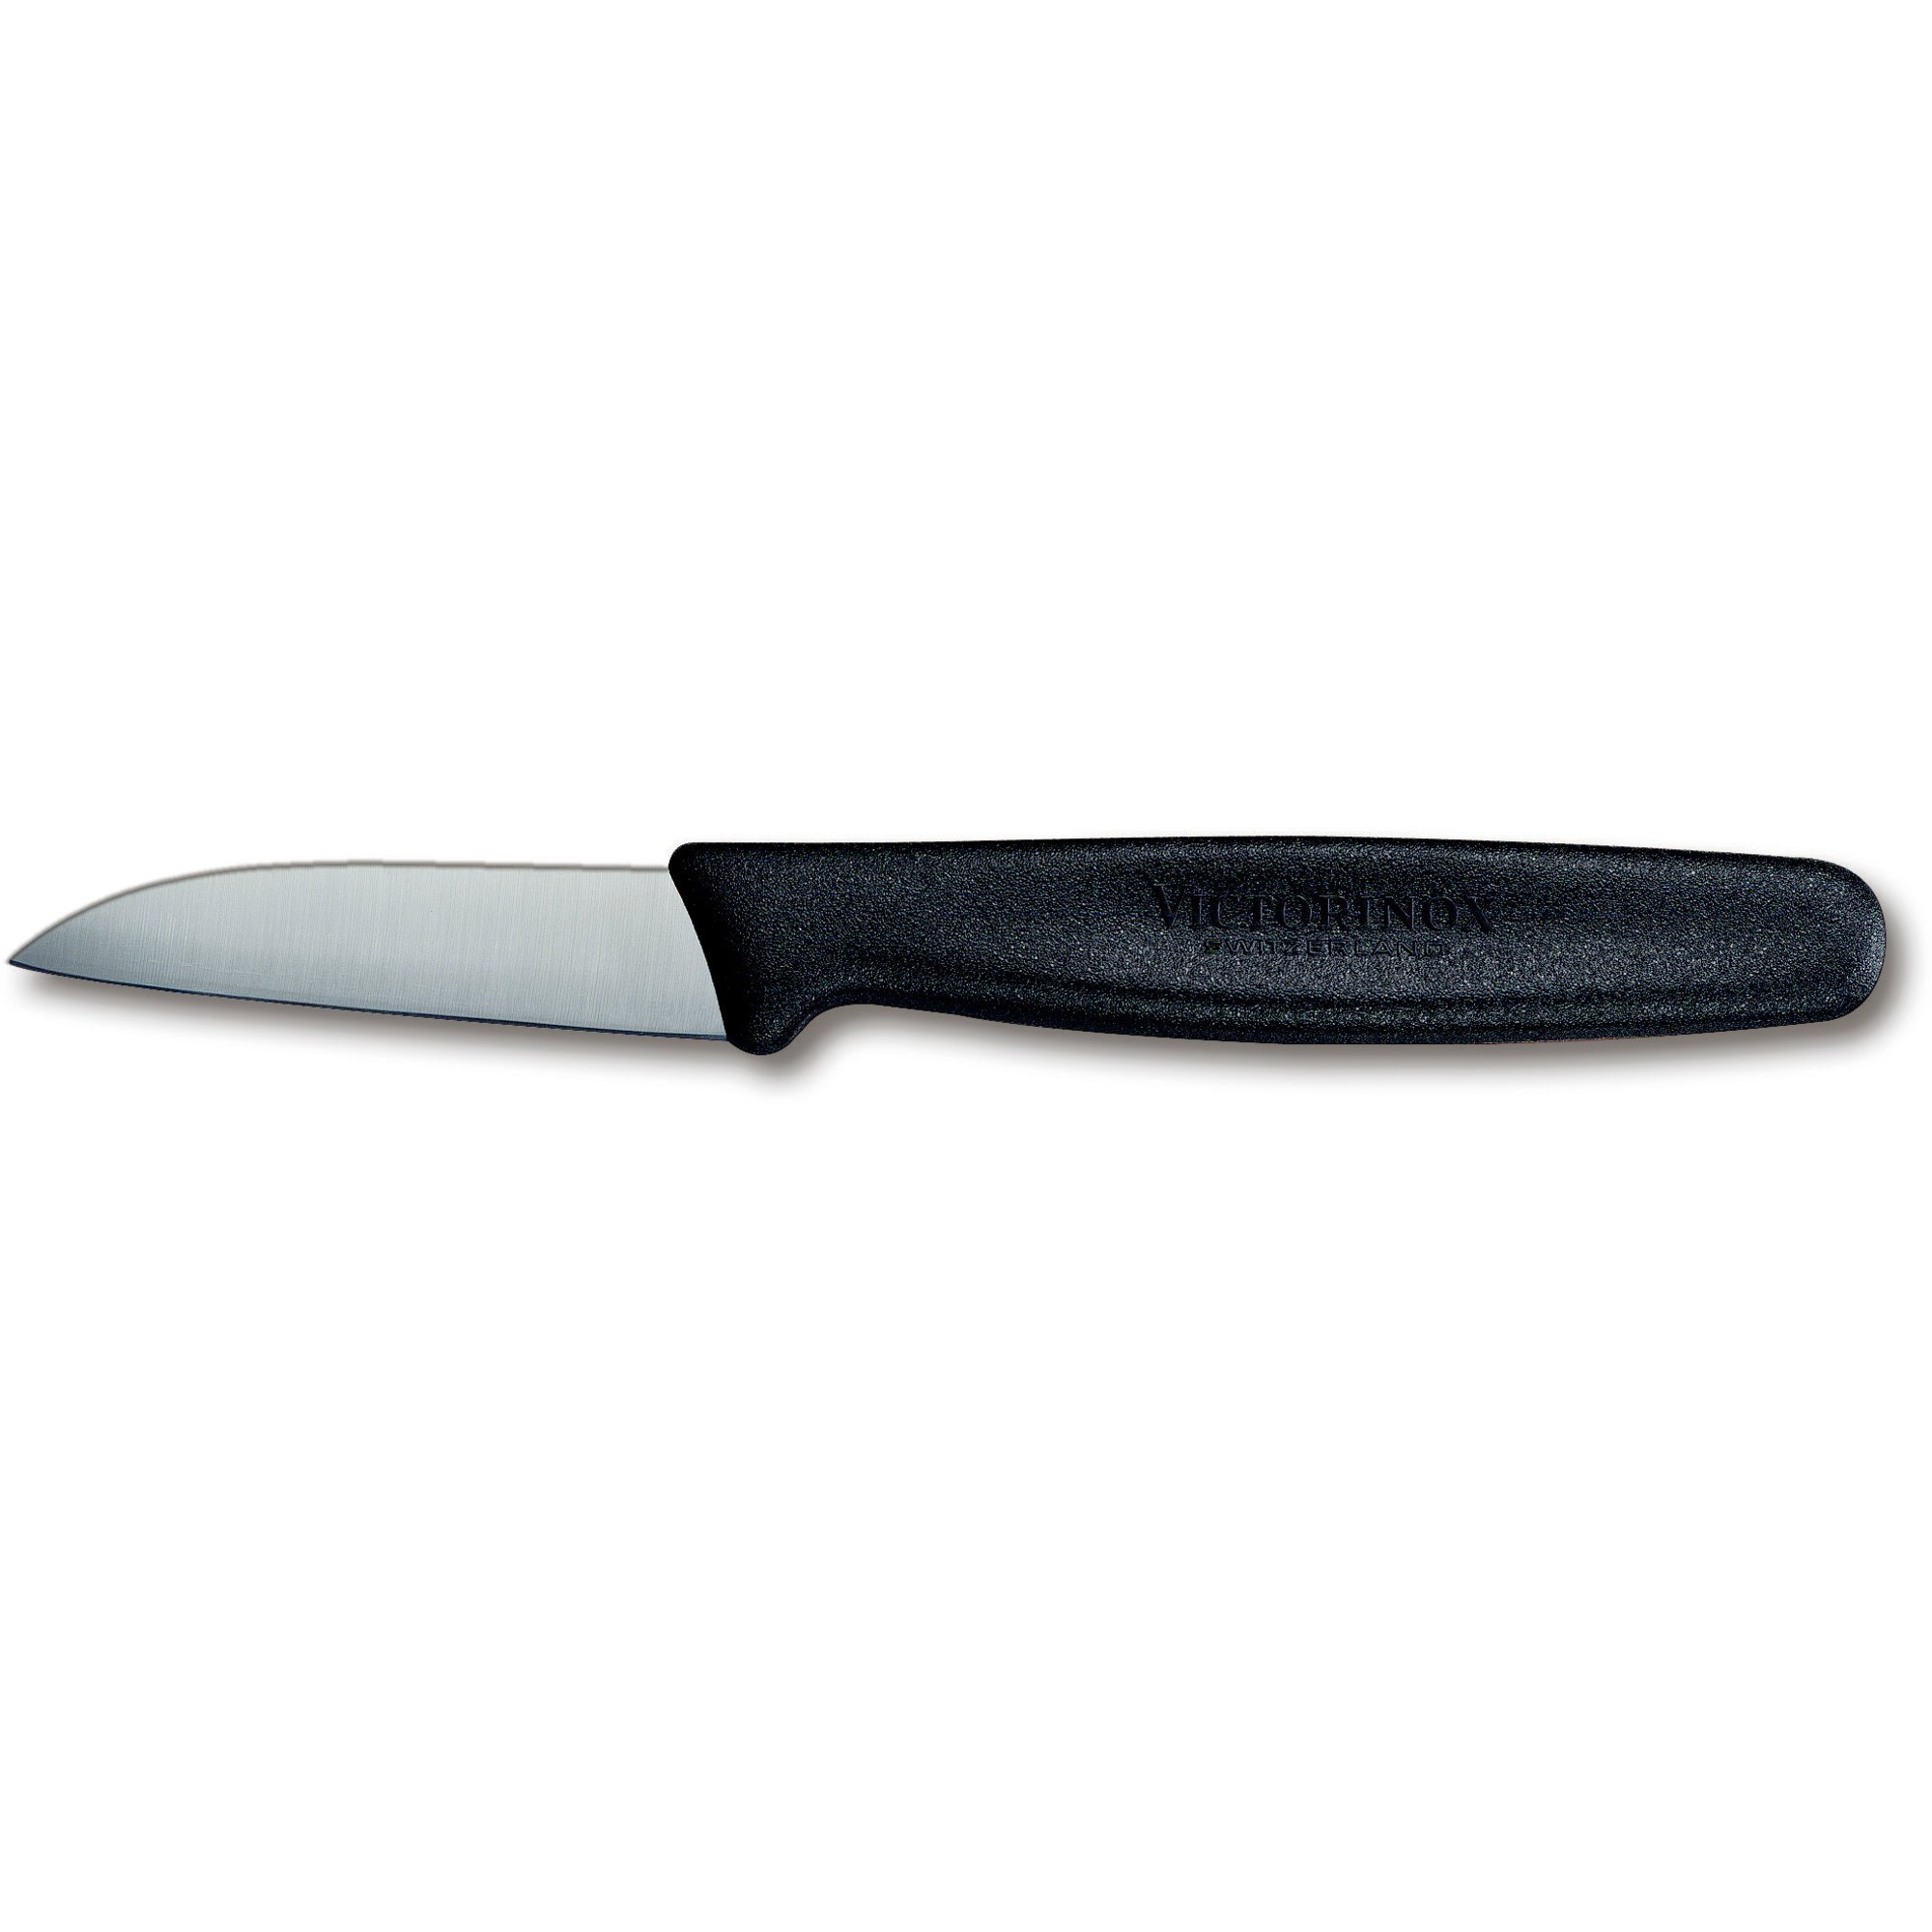 Victorinox Urte- og skrællekniv med nylonskæfte i sort 6 cm.